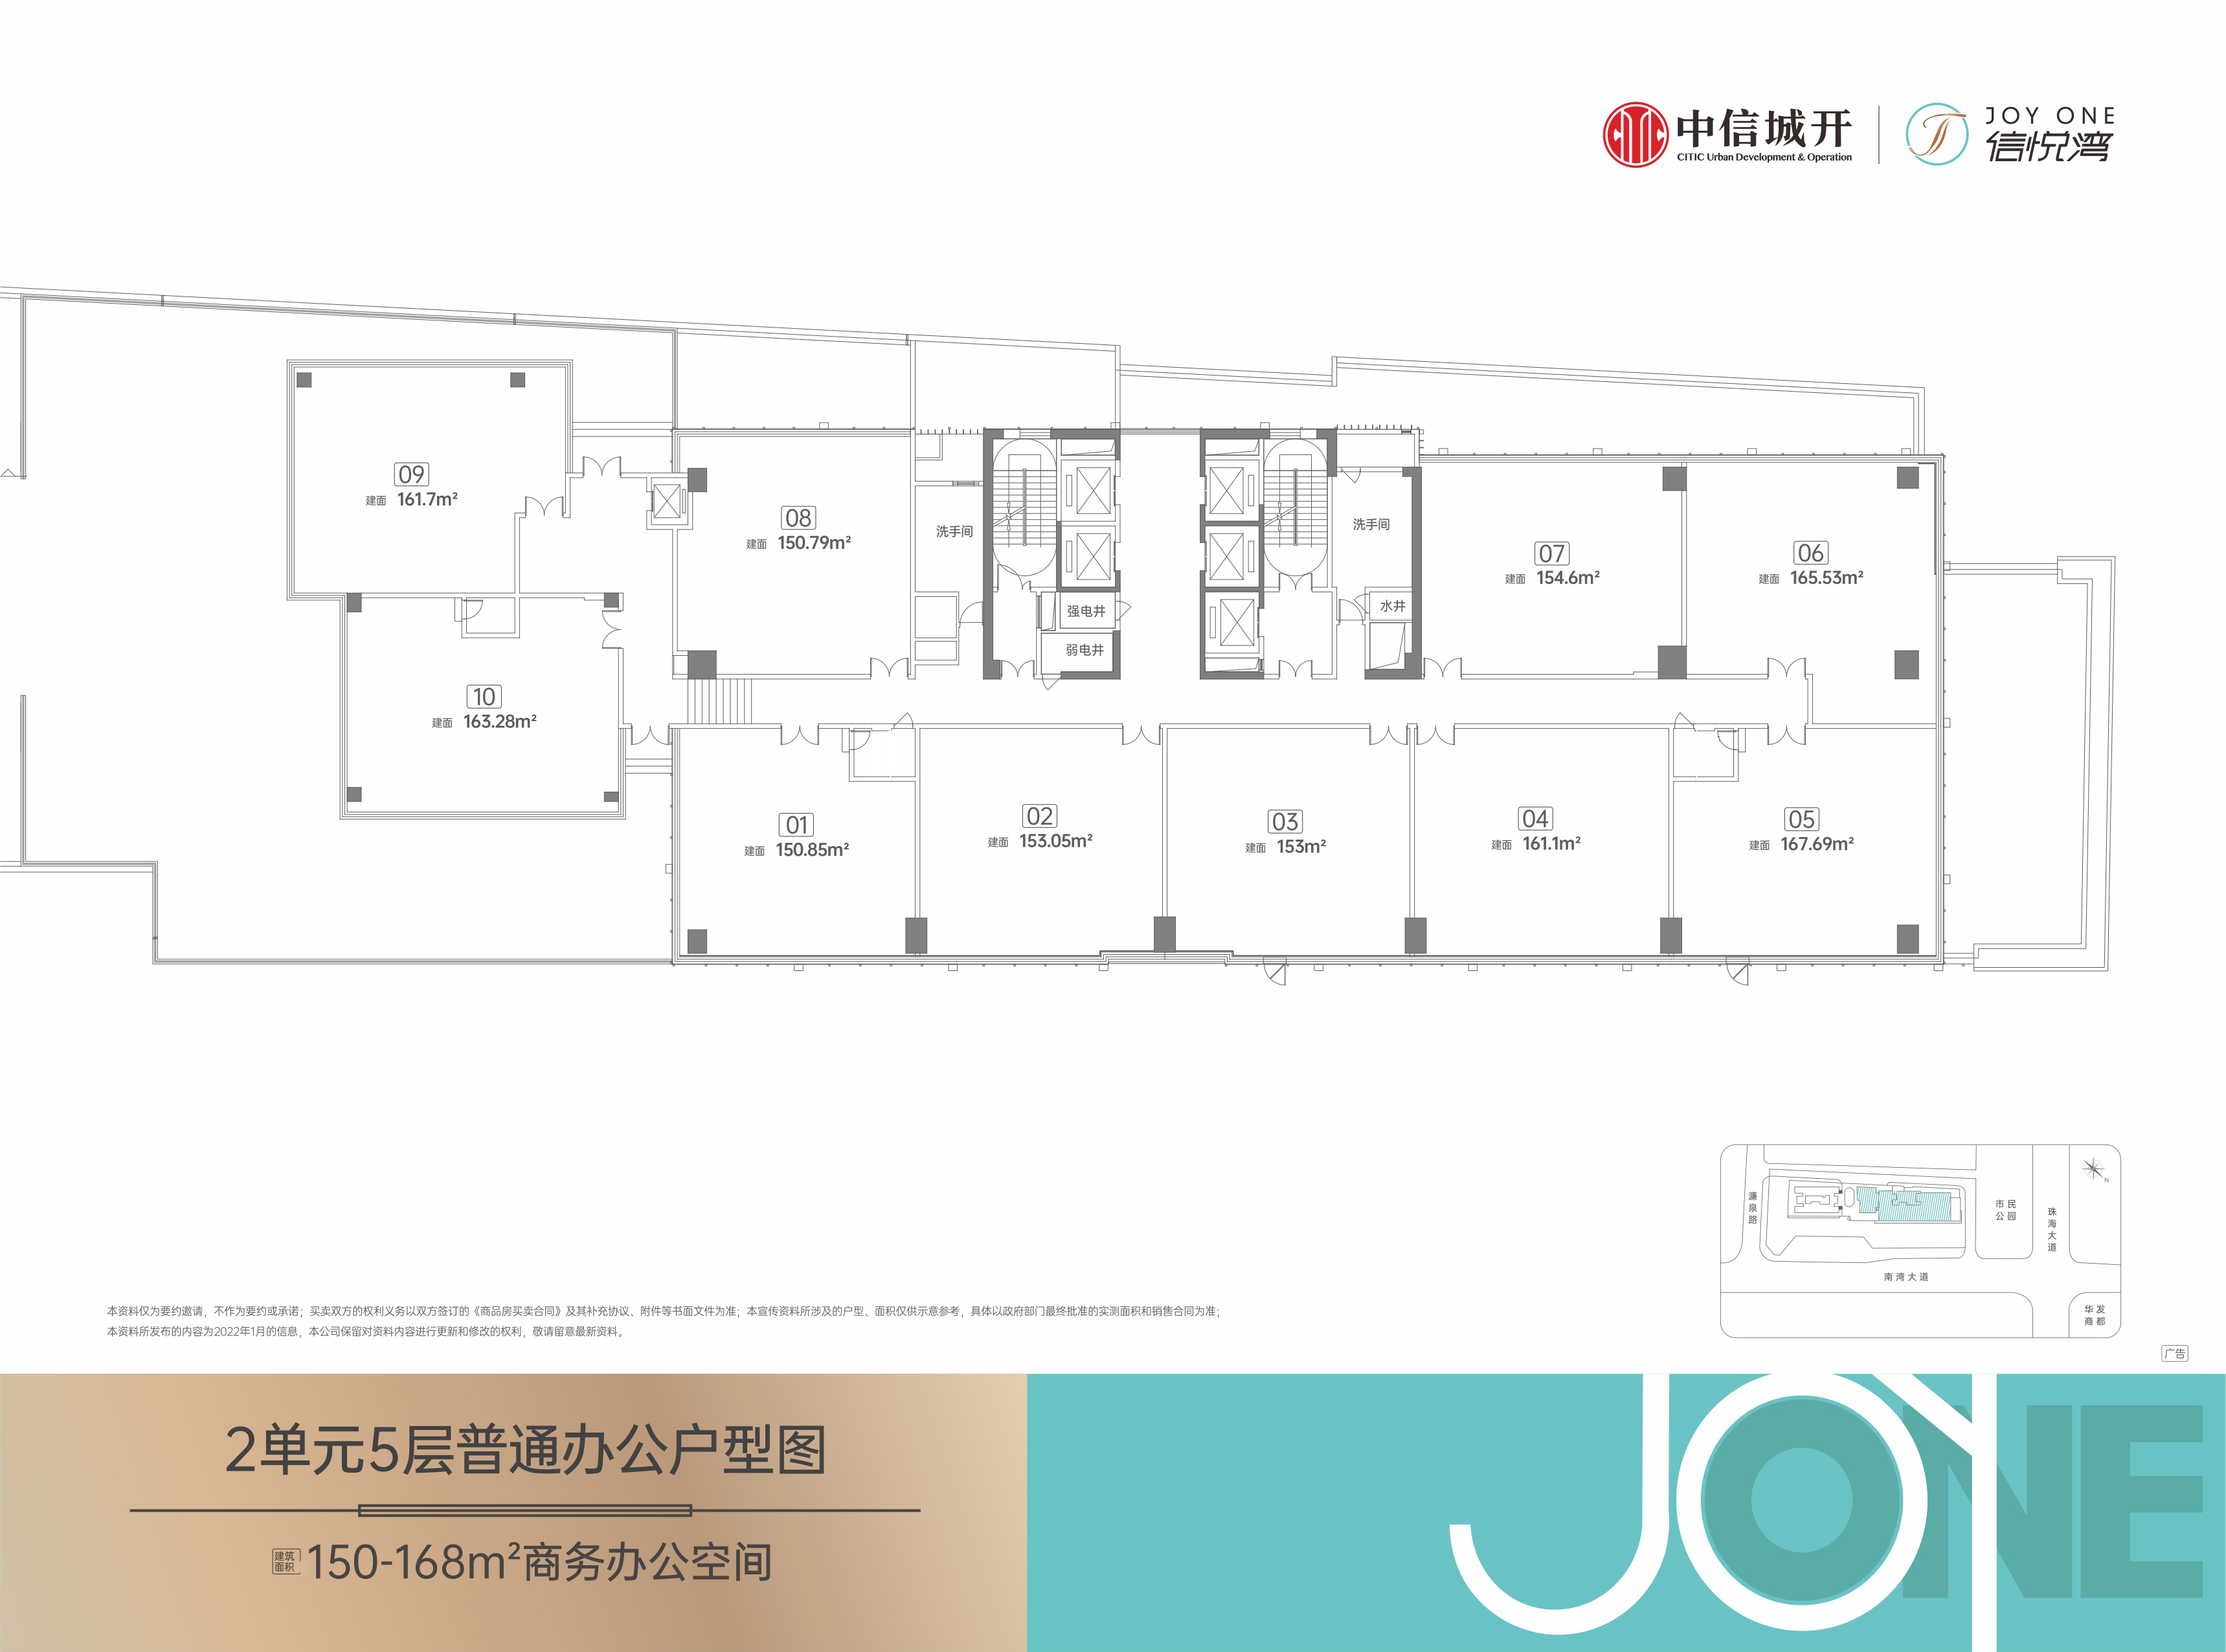 信悦湾大厦 商业办公 2单元5层普通办公户型平面图